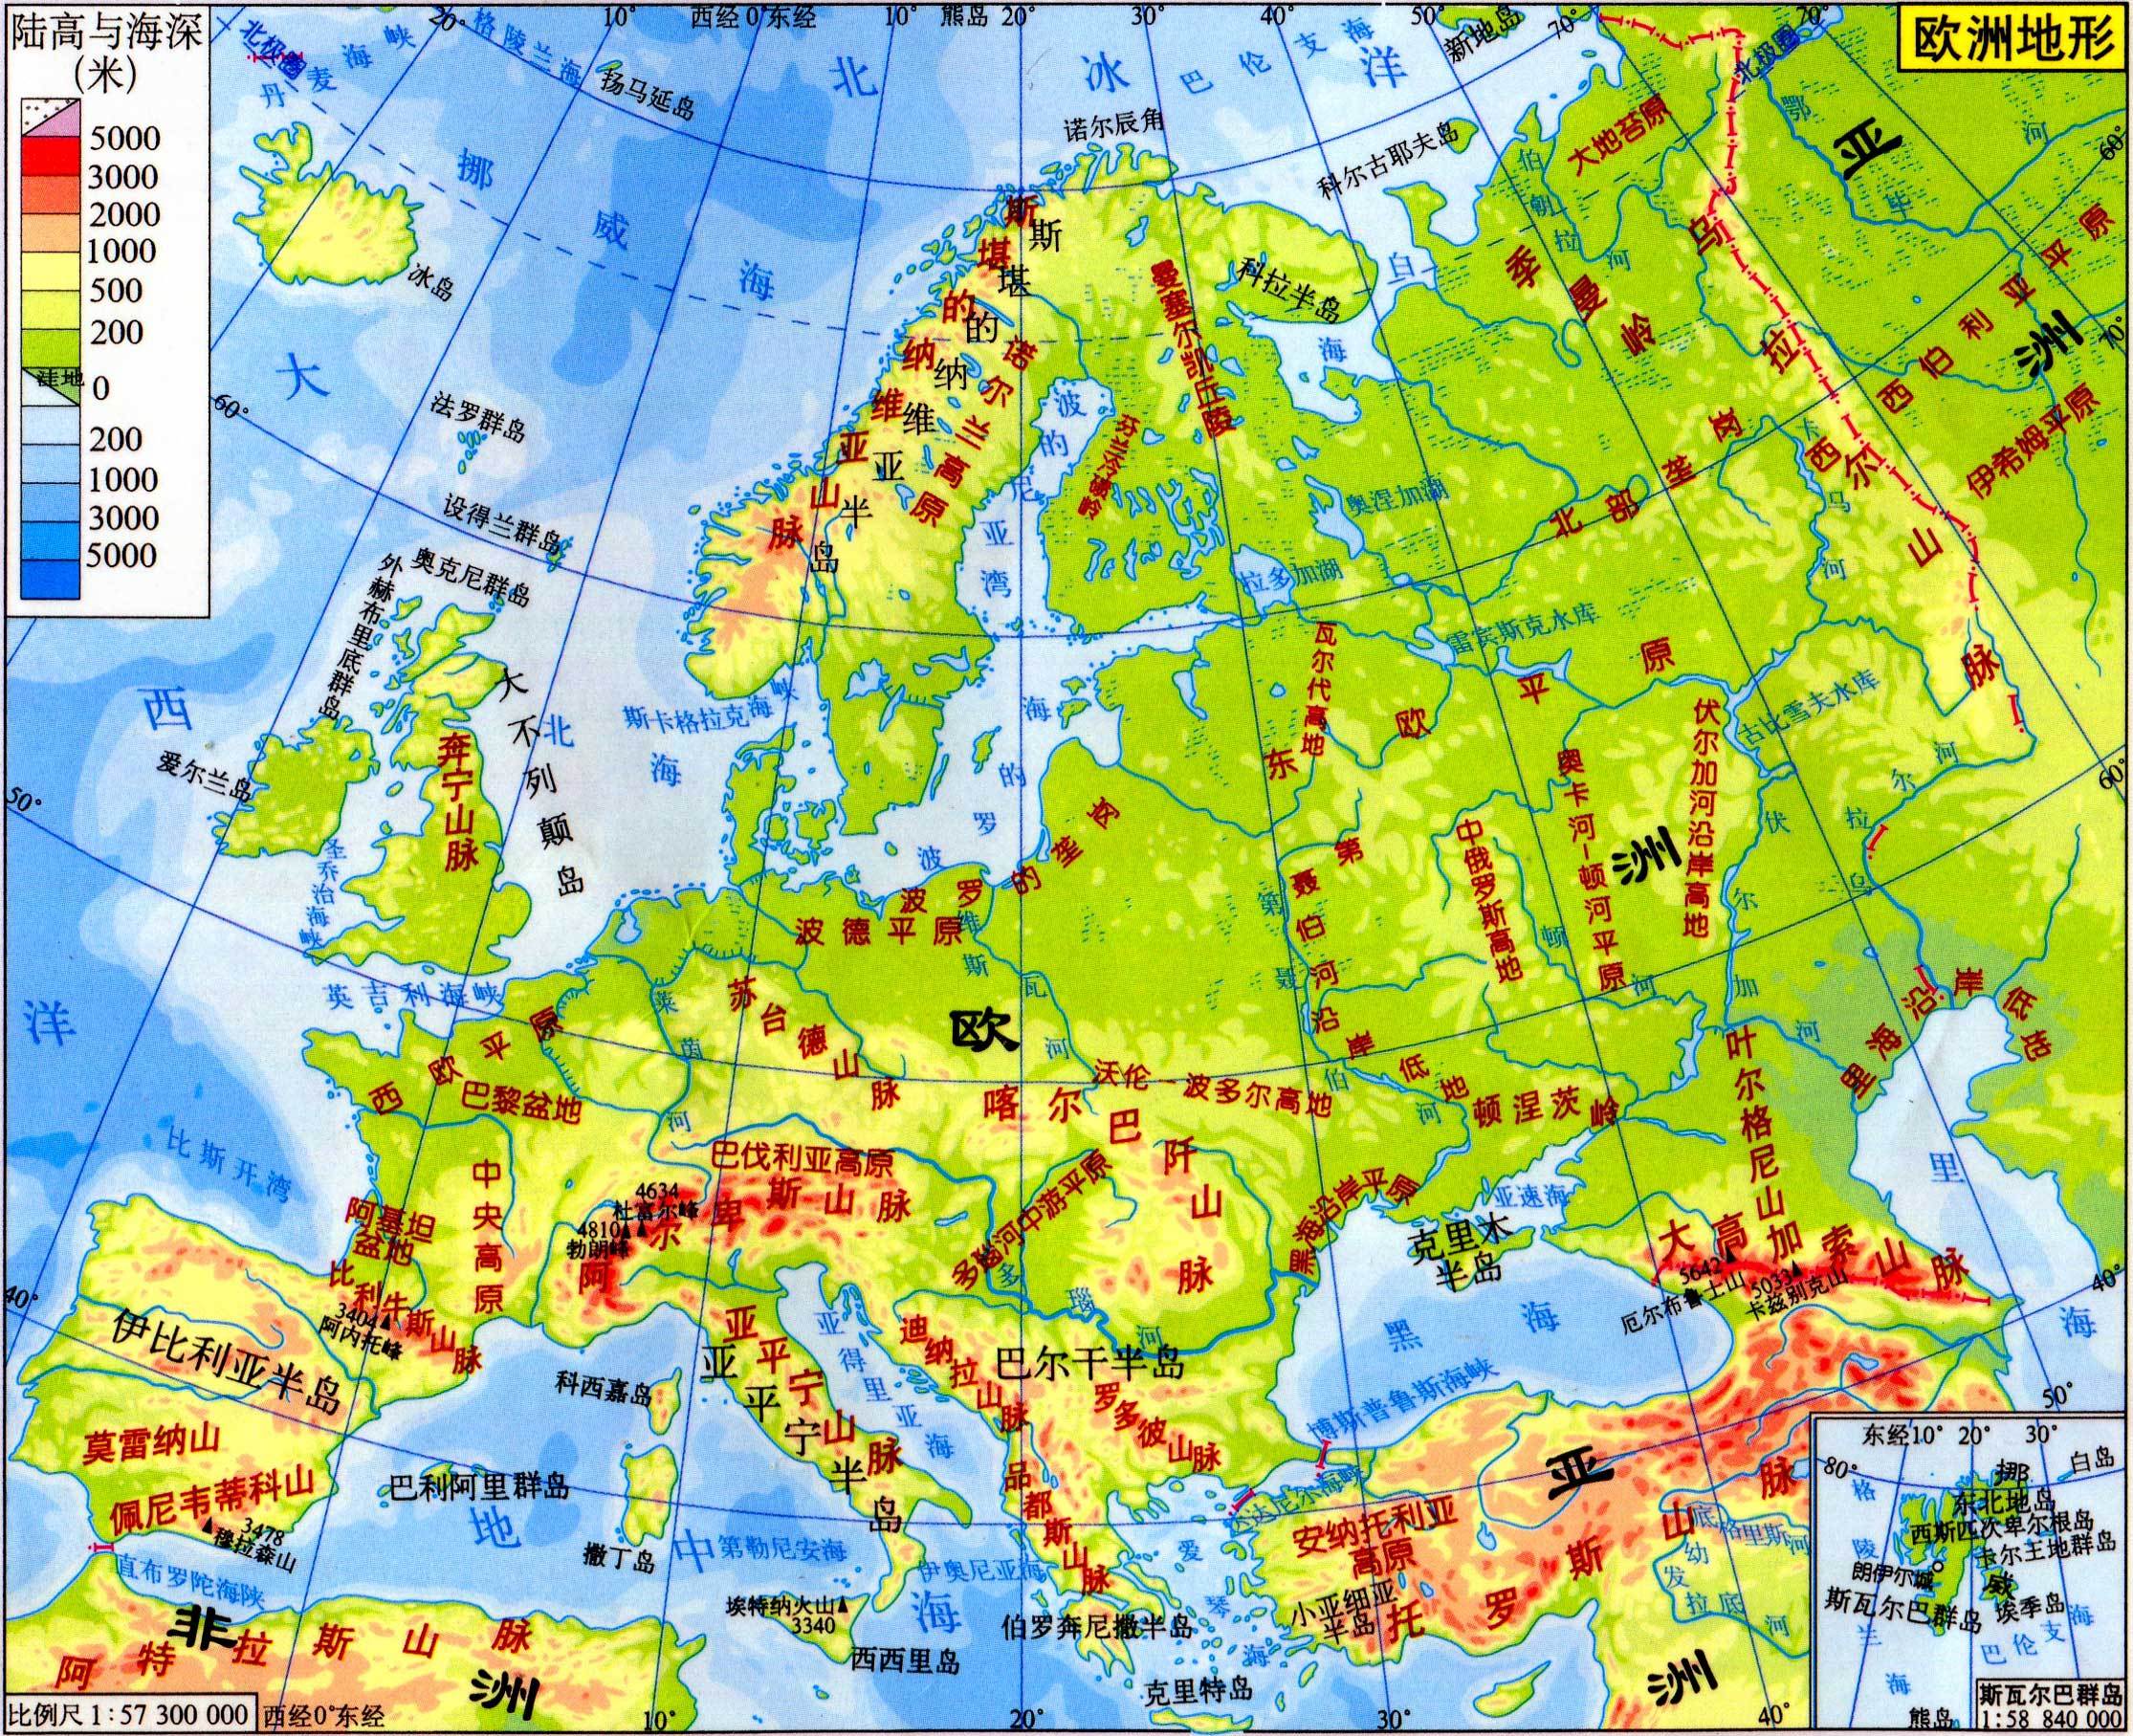 整个欧洲地势的平均高度为340米,地形以平原为主,南部耸立着一系列